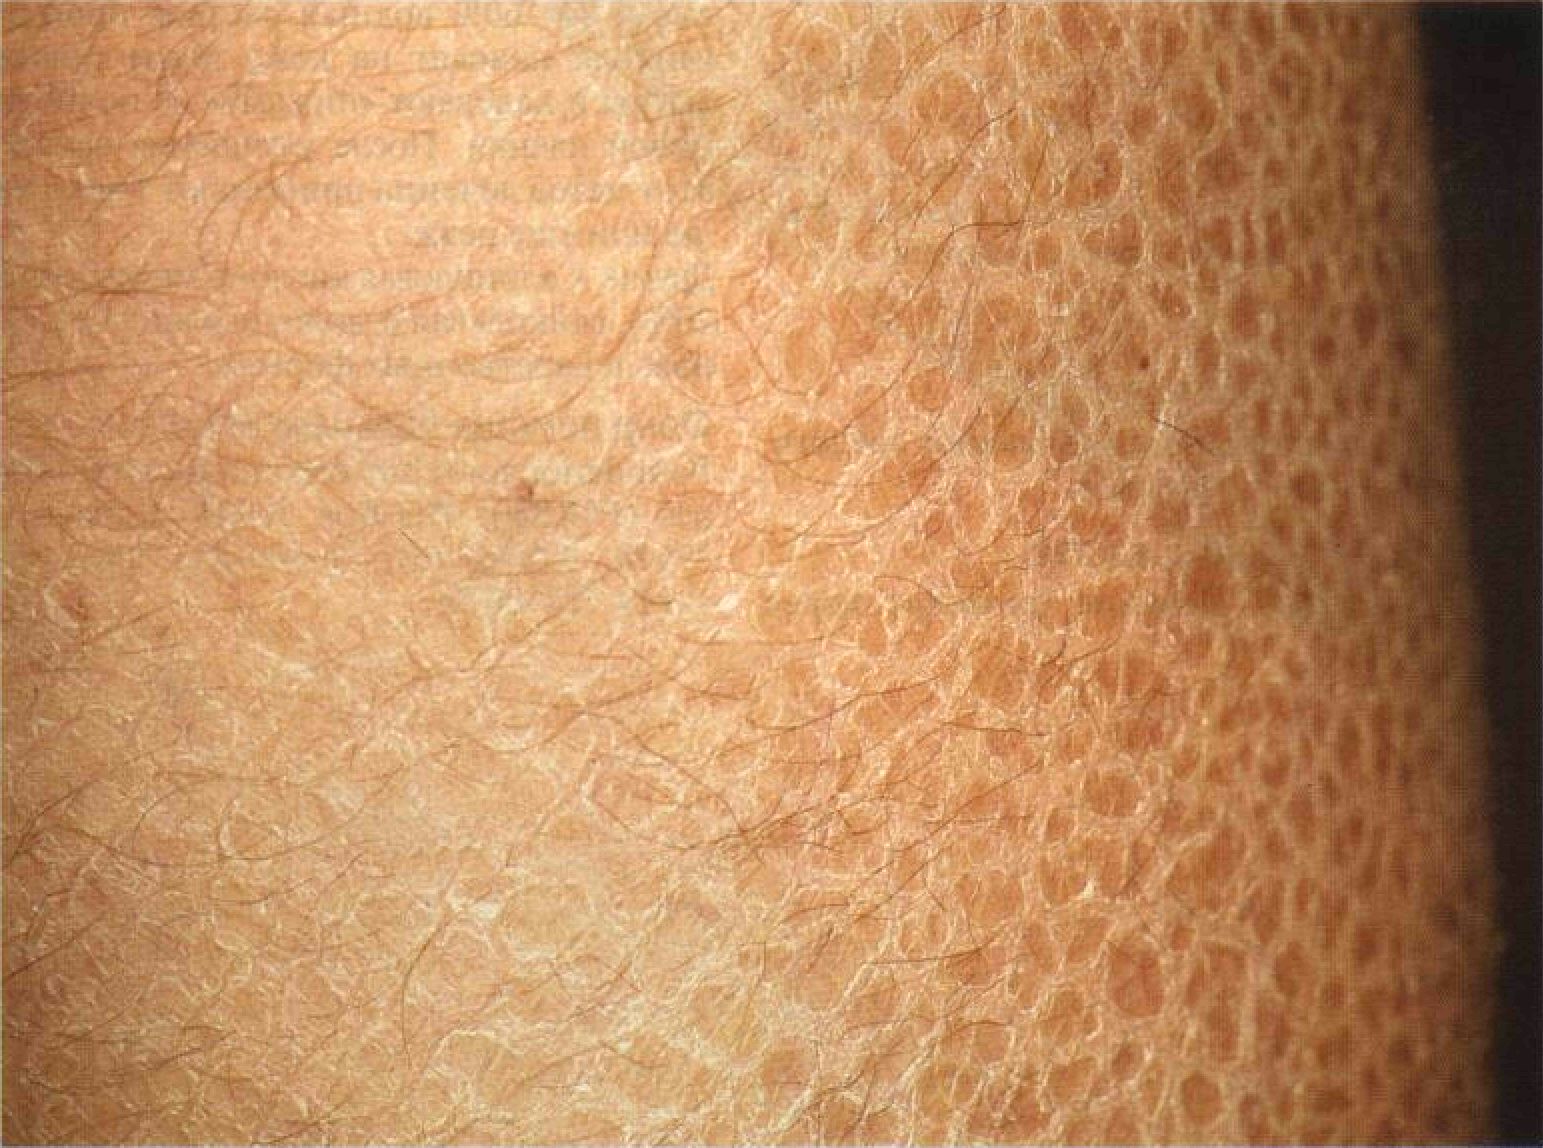 дерматит высыпания в паховой области лечение фото